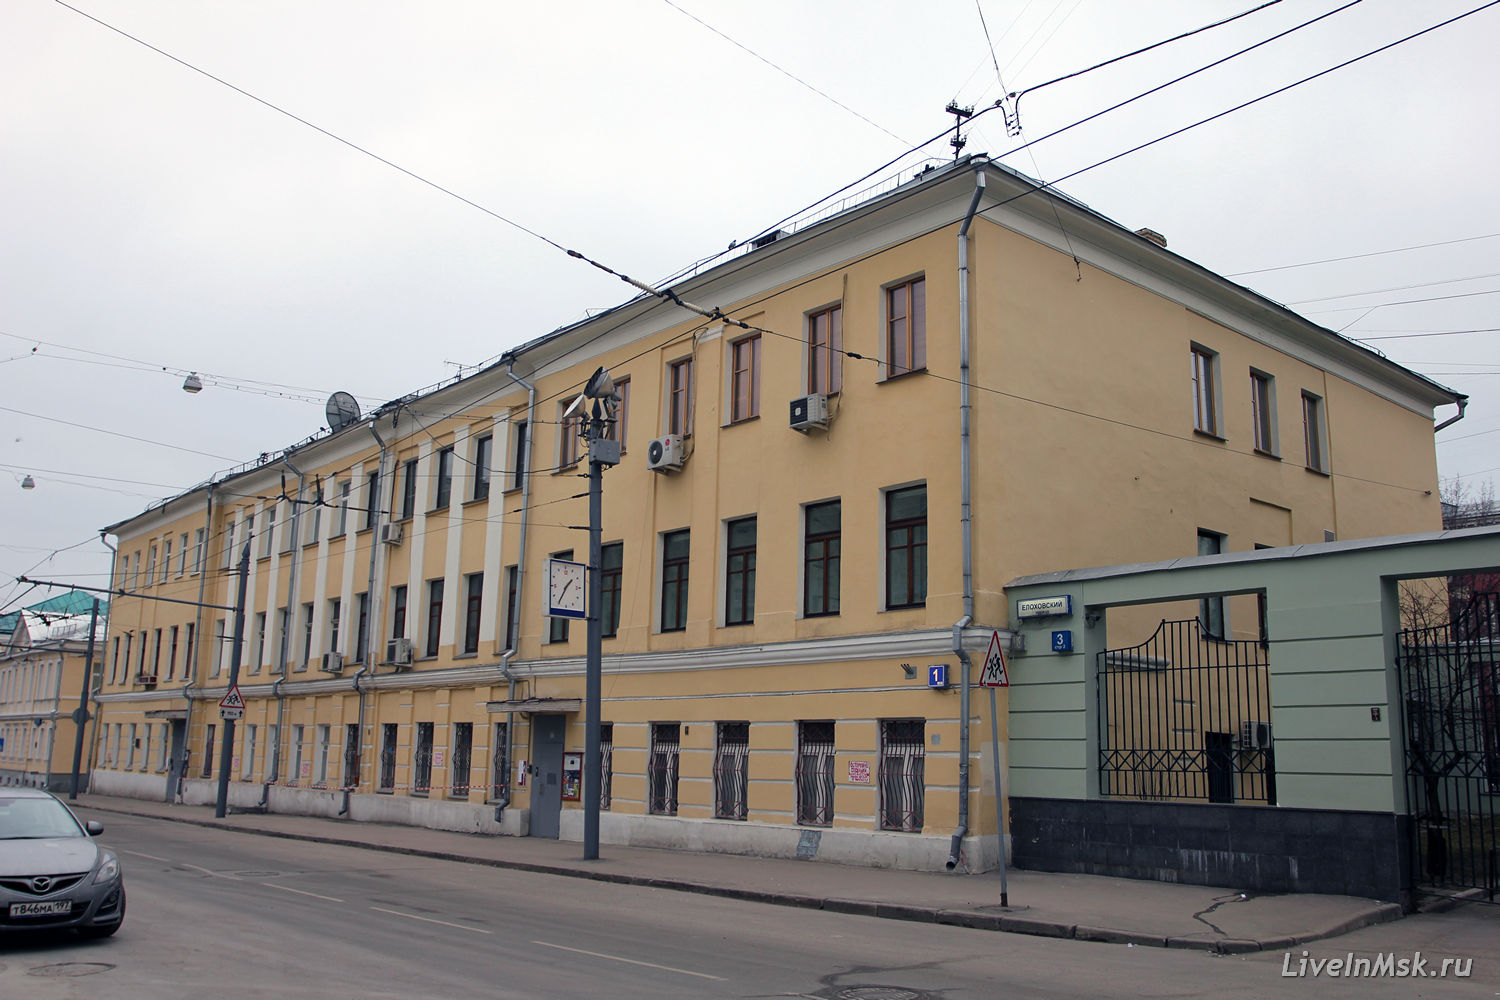 Дом фабрики Поповой в Елоховском проезде, фото 2014 года